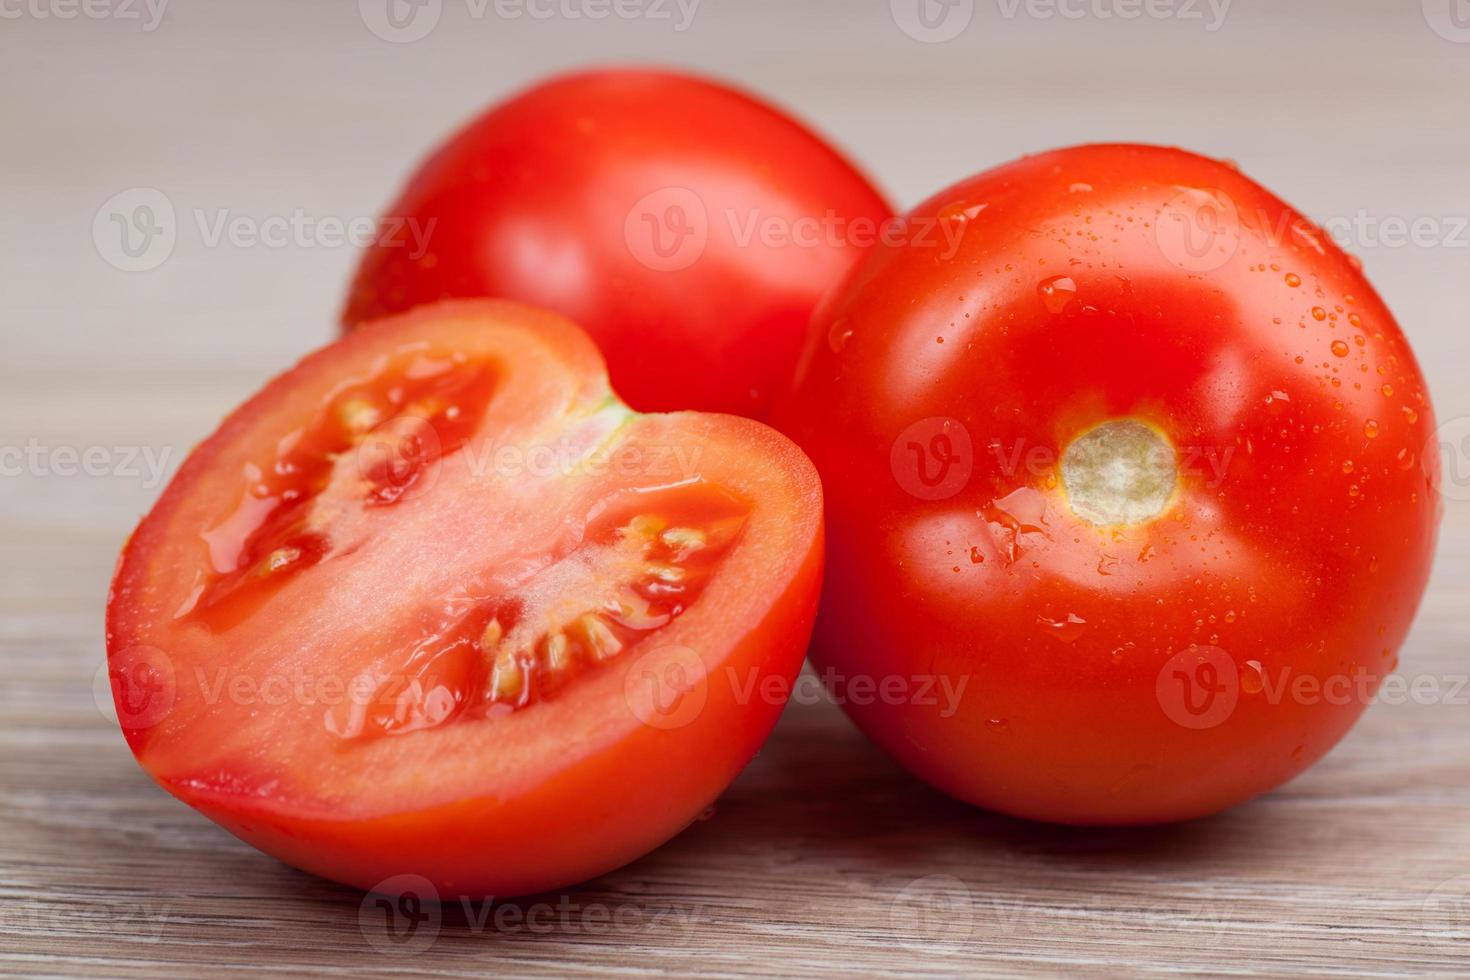 gros plan de tomates fraîches dans des gouttes d'eau sur une planche de bois photo